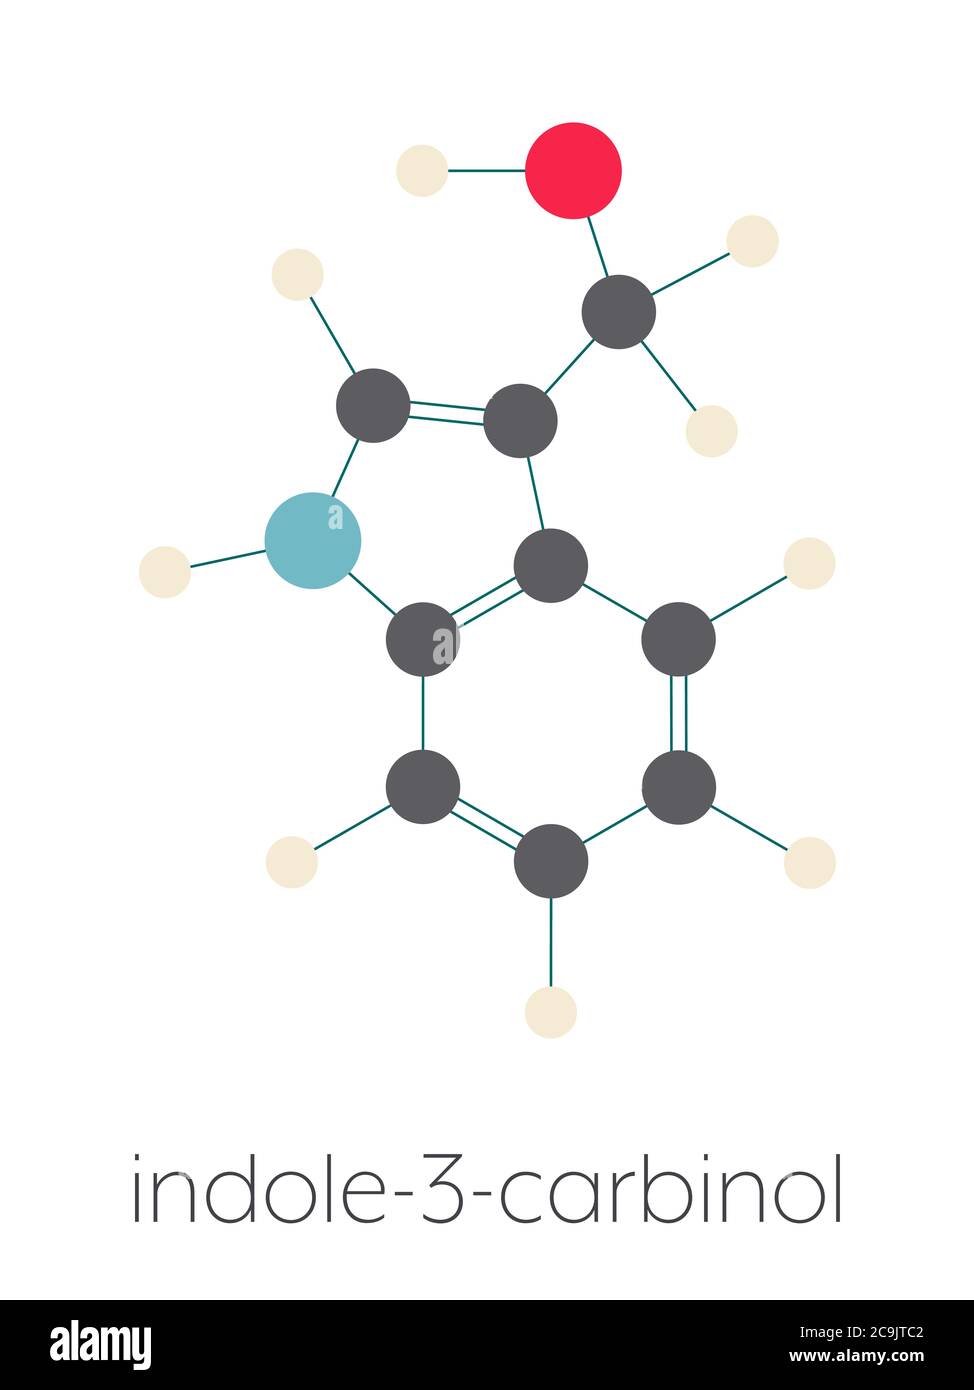 Indol-3-Carbinol (I3C) Kreuzblütenmolekül. In Lebensmitteln mit Brokkoli, Kohl, Grünkohl, etc. Vorbereitet kann positive Auswirkungen auf die Gesundheit haben Stockfoto